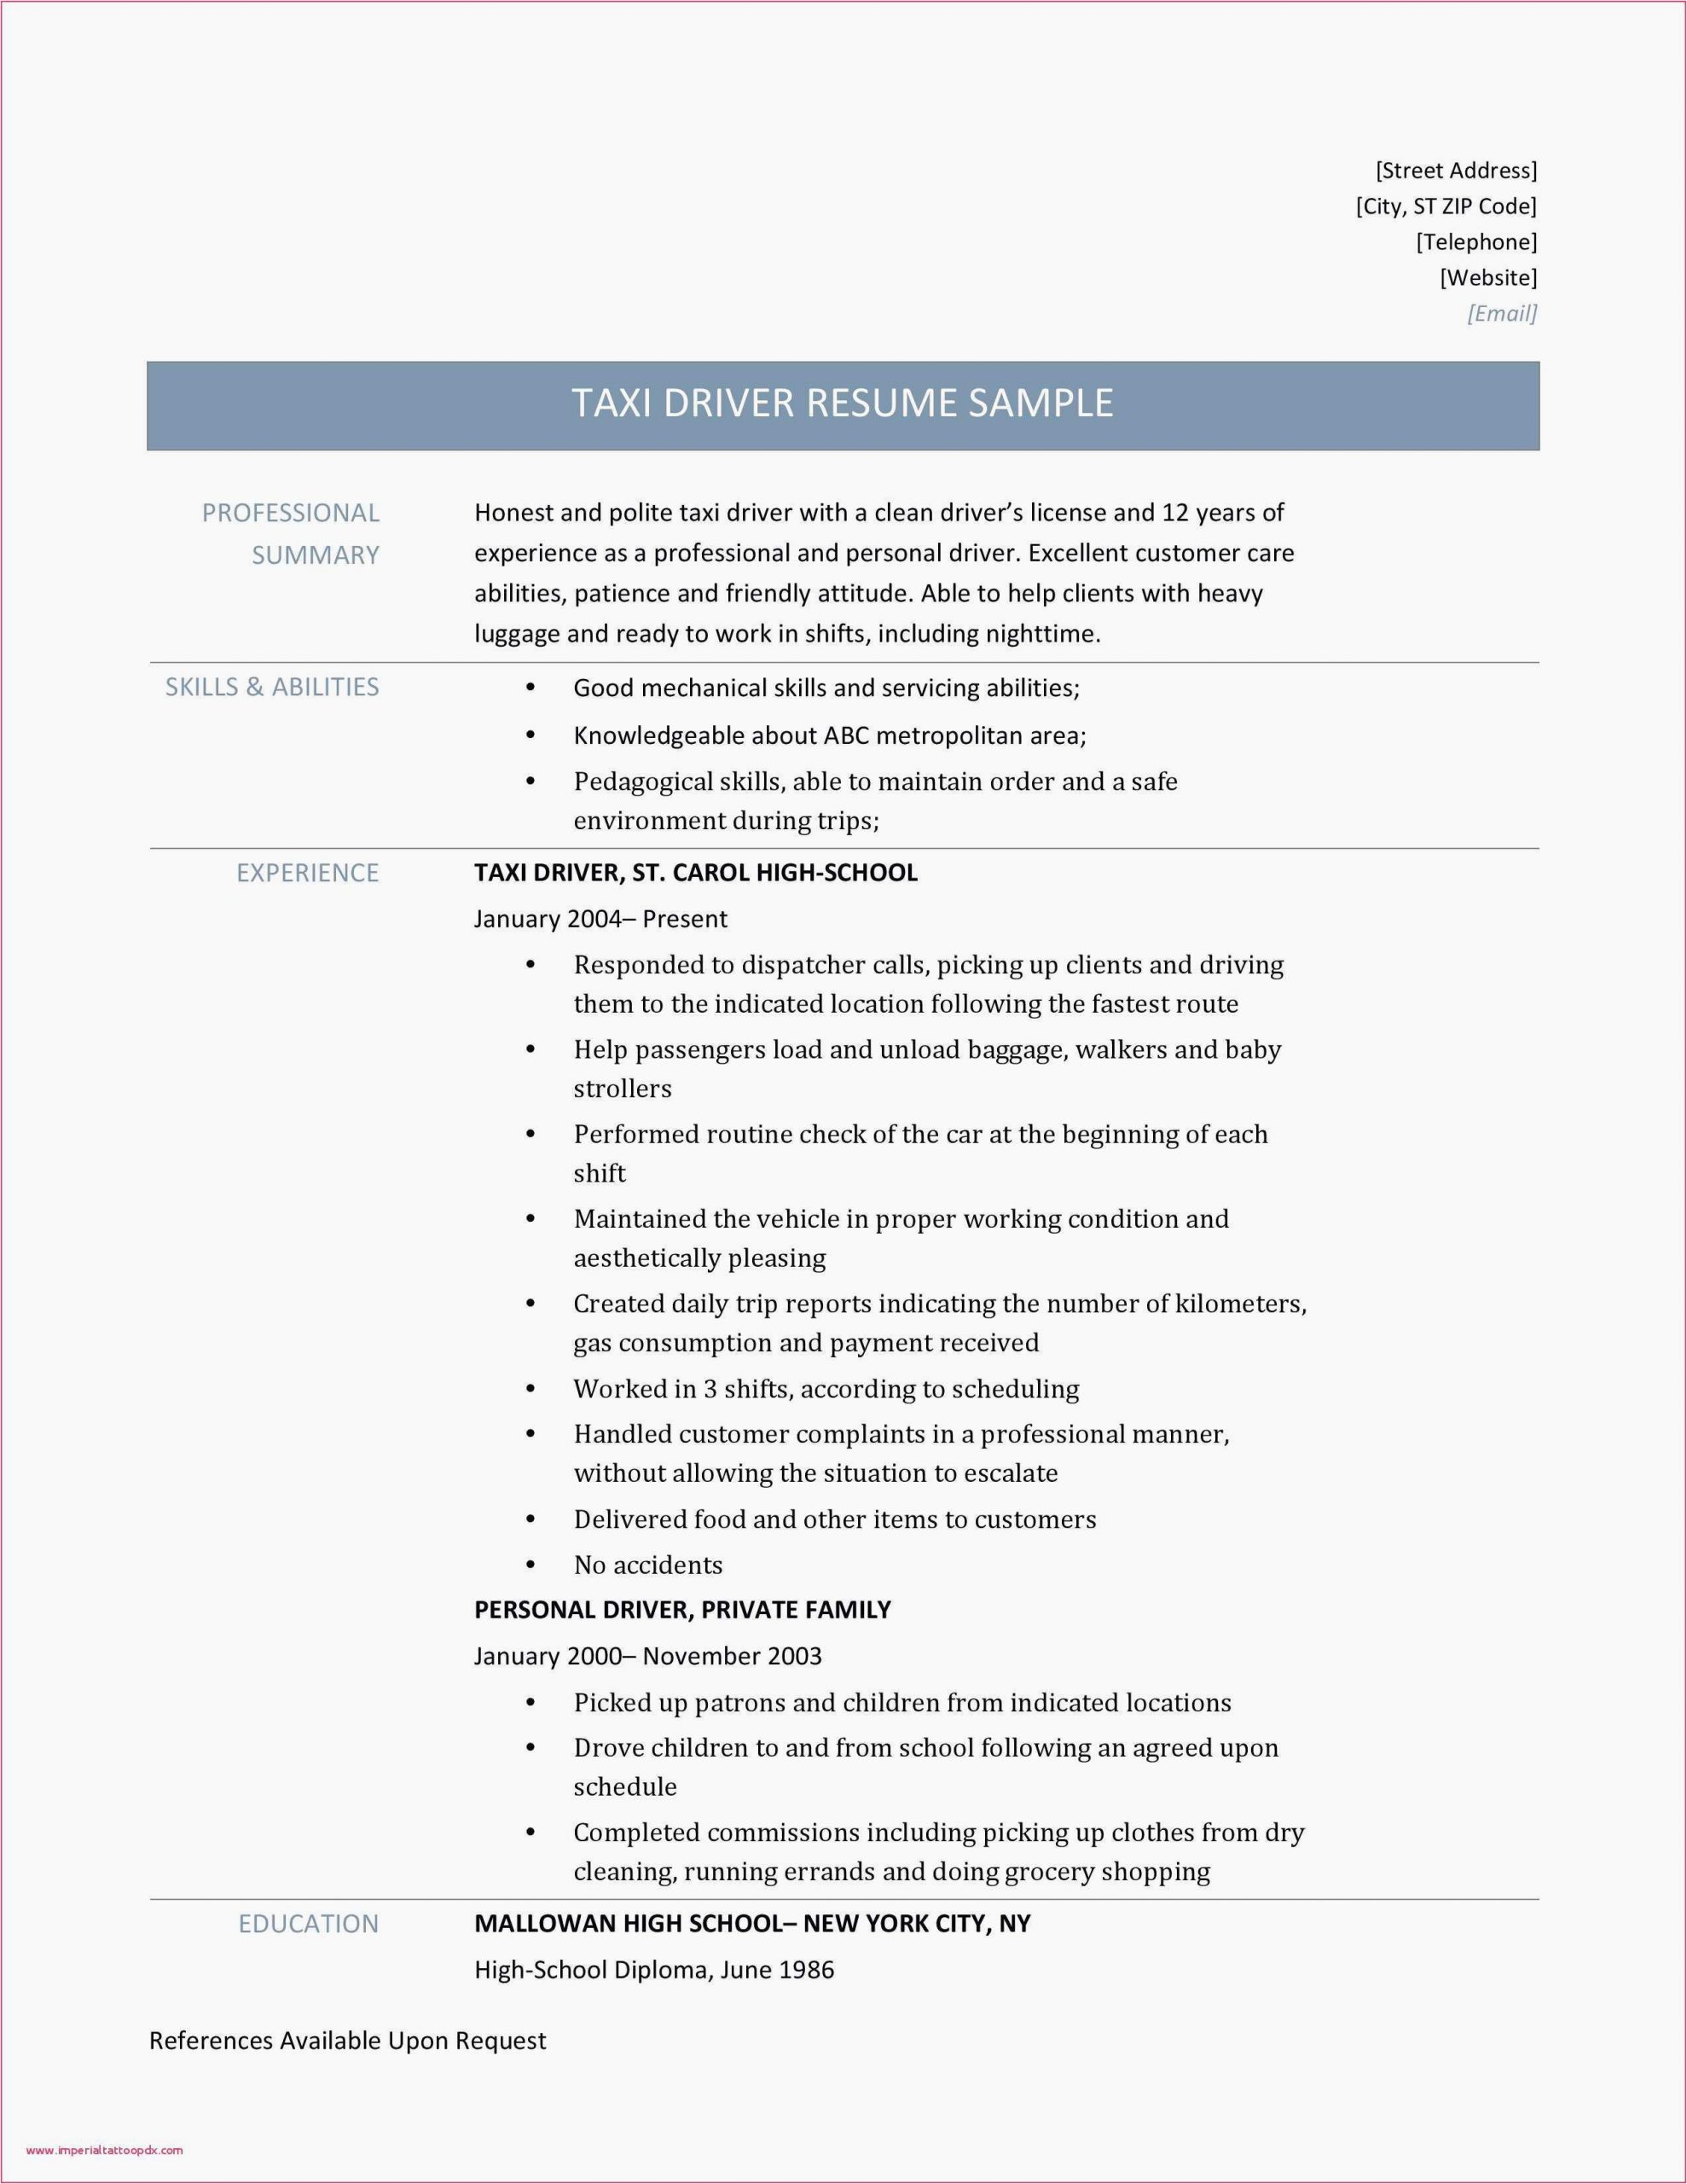 Sample Resume Newspaper Delivery Job Description 12 13 Delivery Driver Skills for Resume